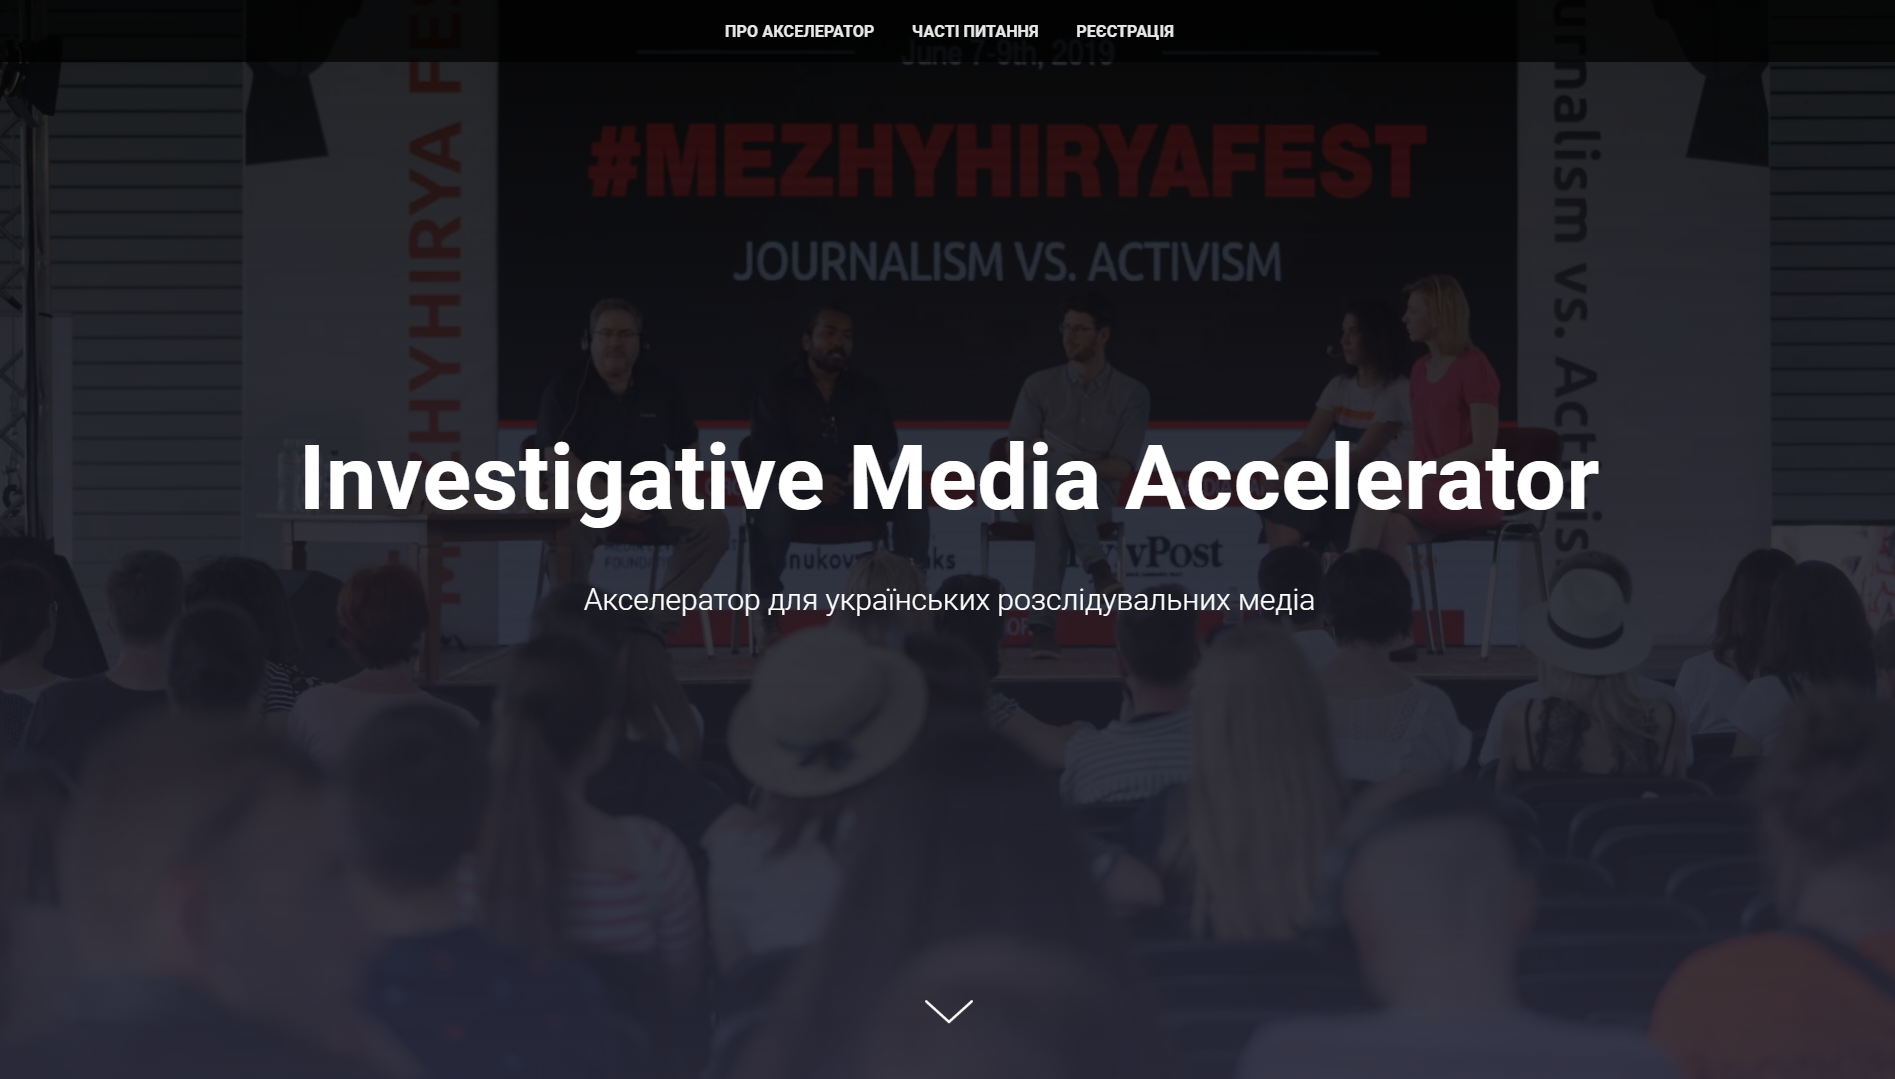 До 21 березня — прийом заявок на «Медіа Акселератор» для розслідувальних медіа